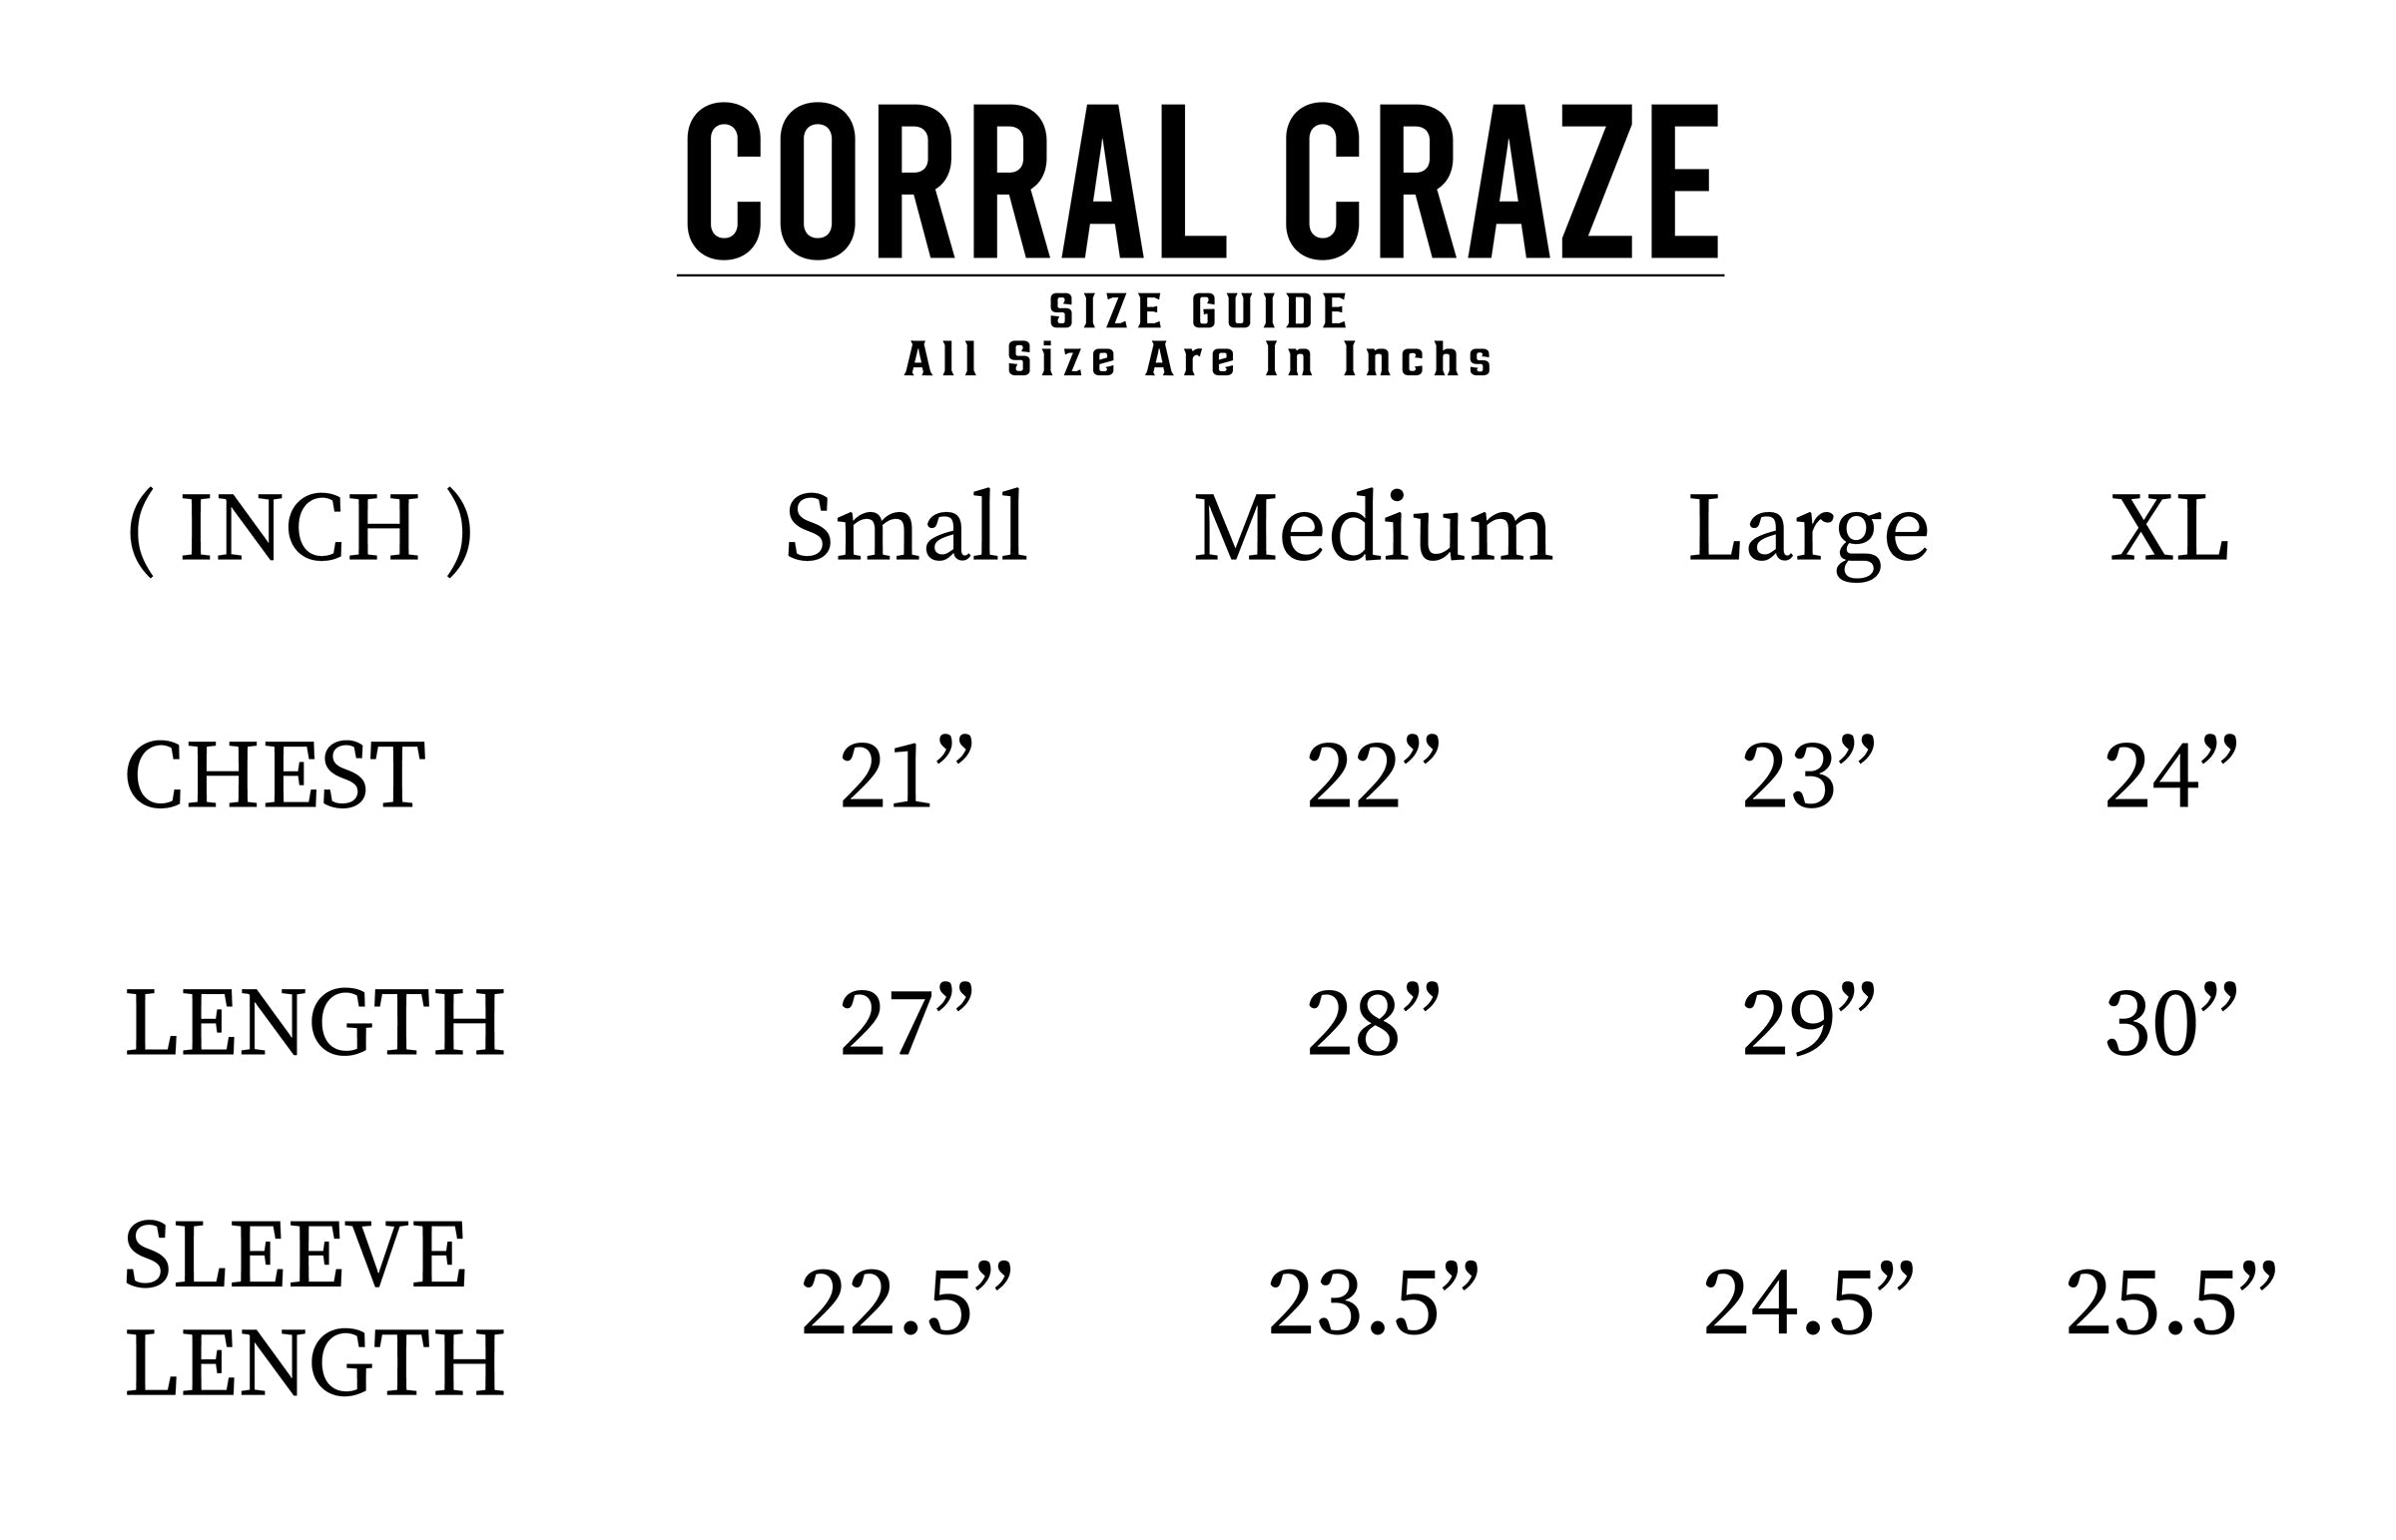 Corral craze